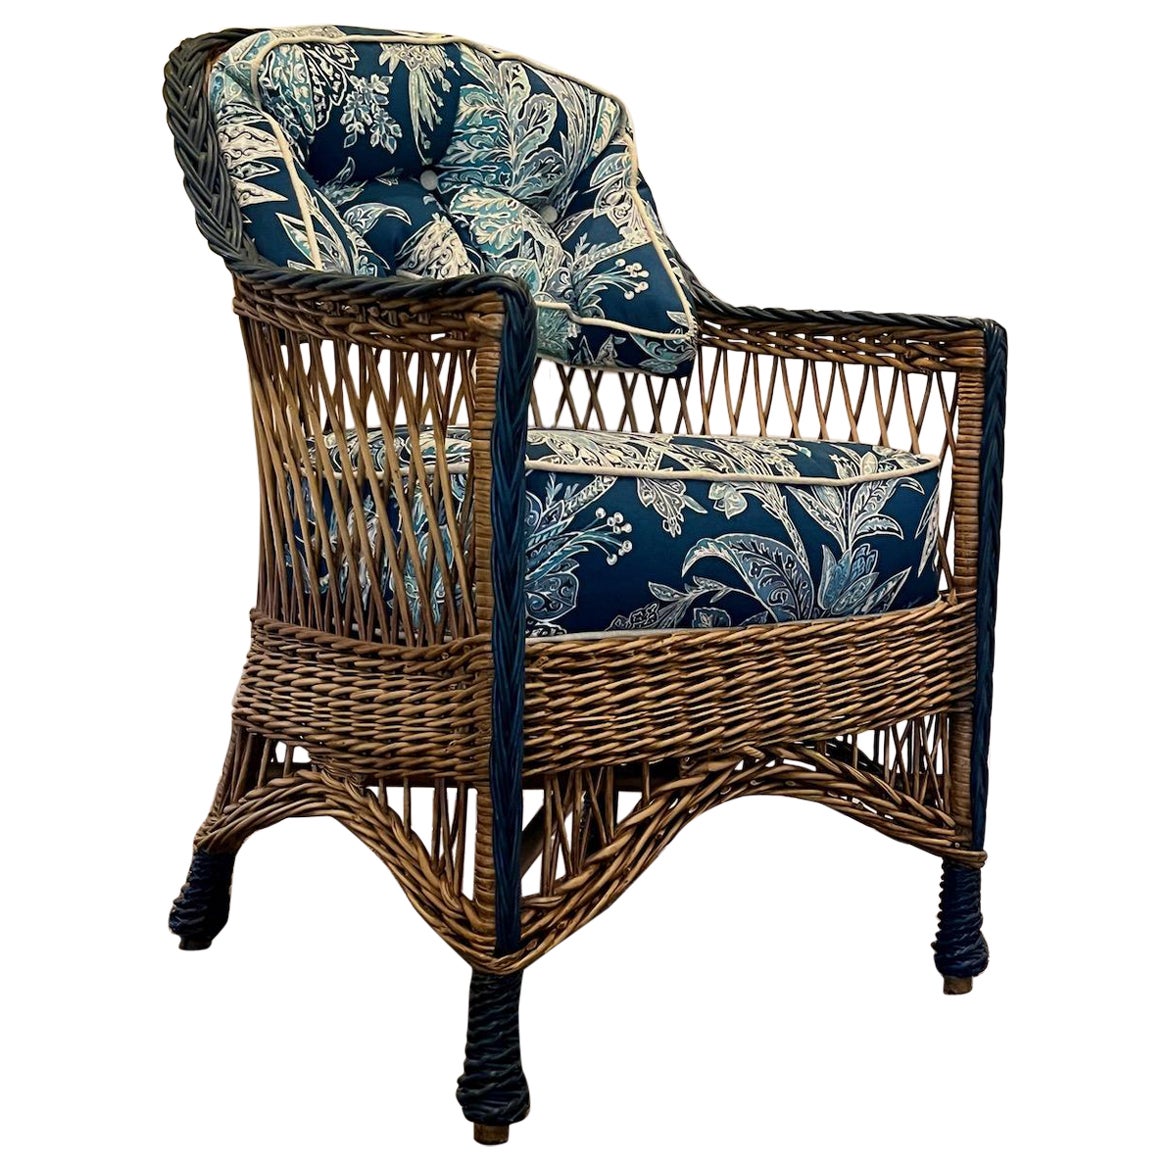 Ancienne chaise à bras de style Bar Harbor, tissée à la main, finition naturelle, avec garniture bleue